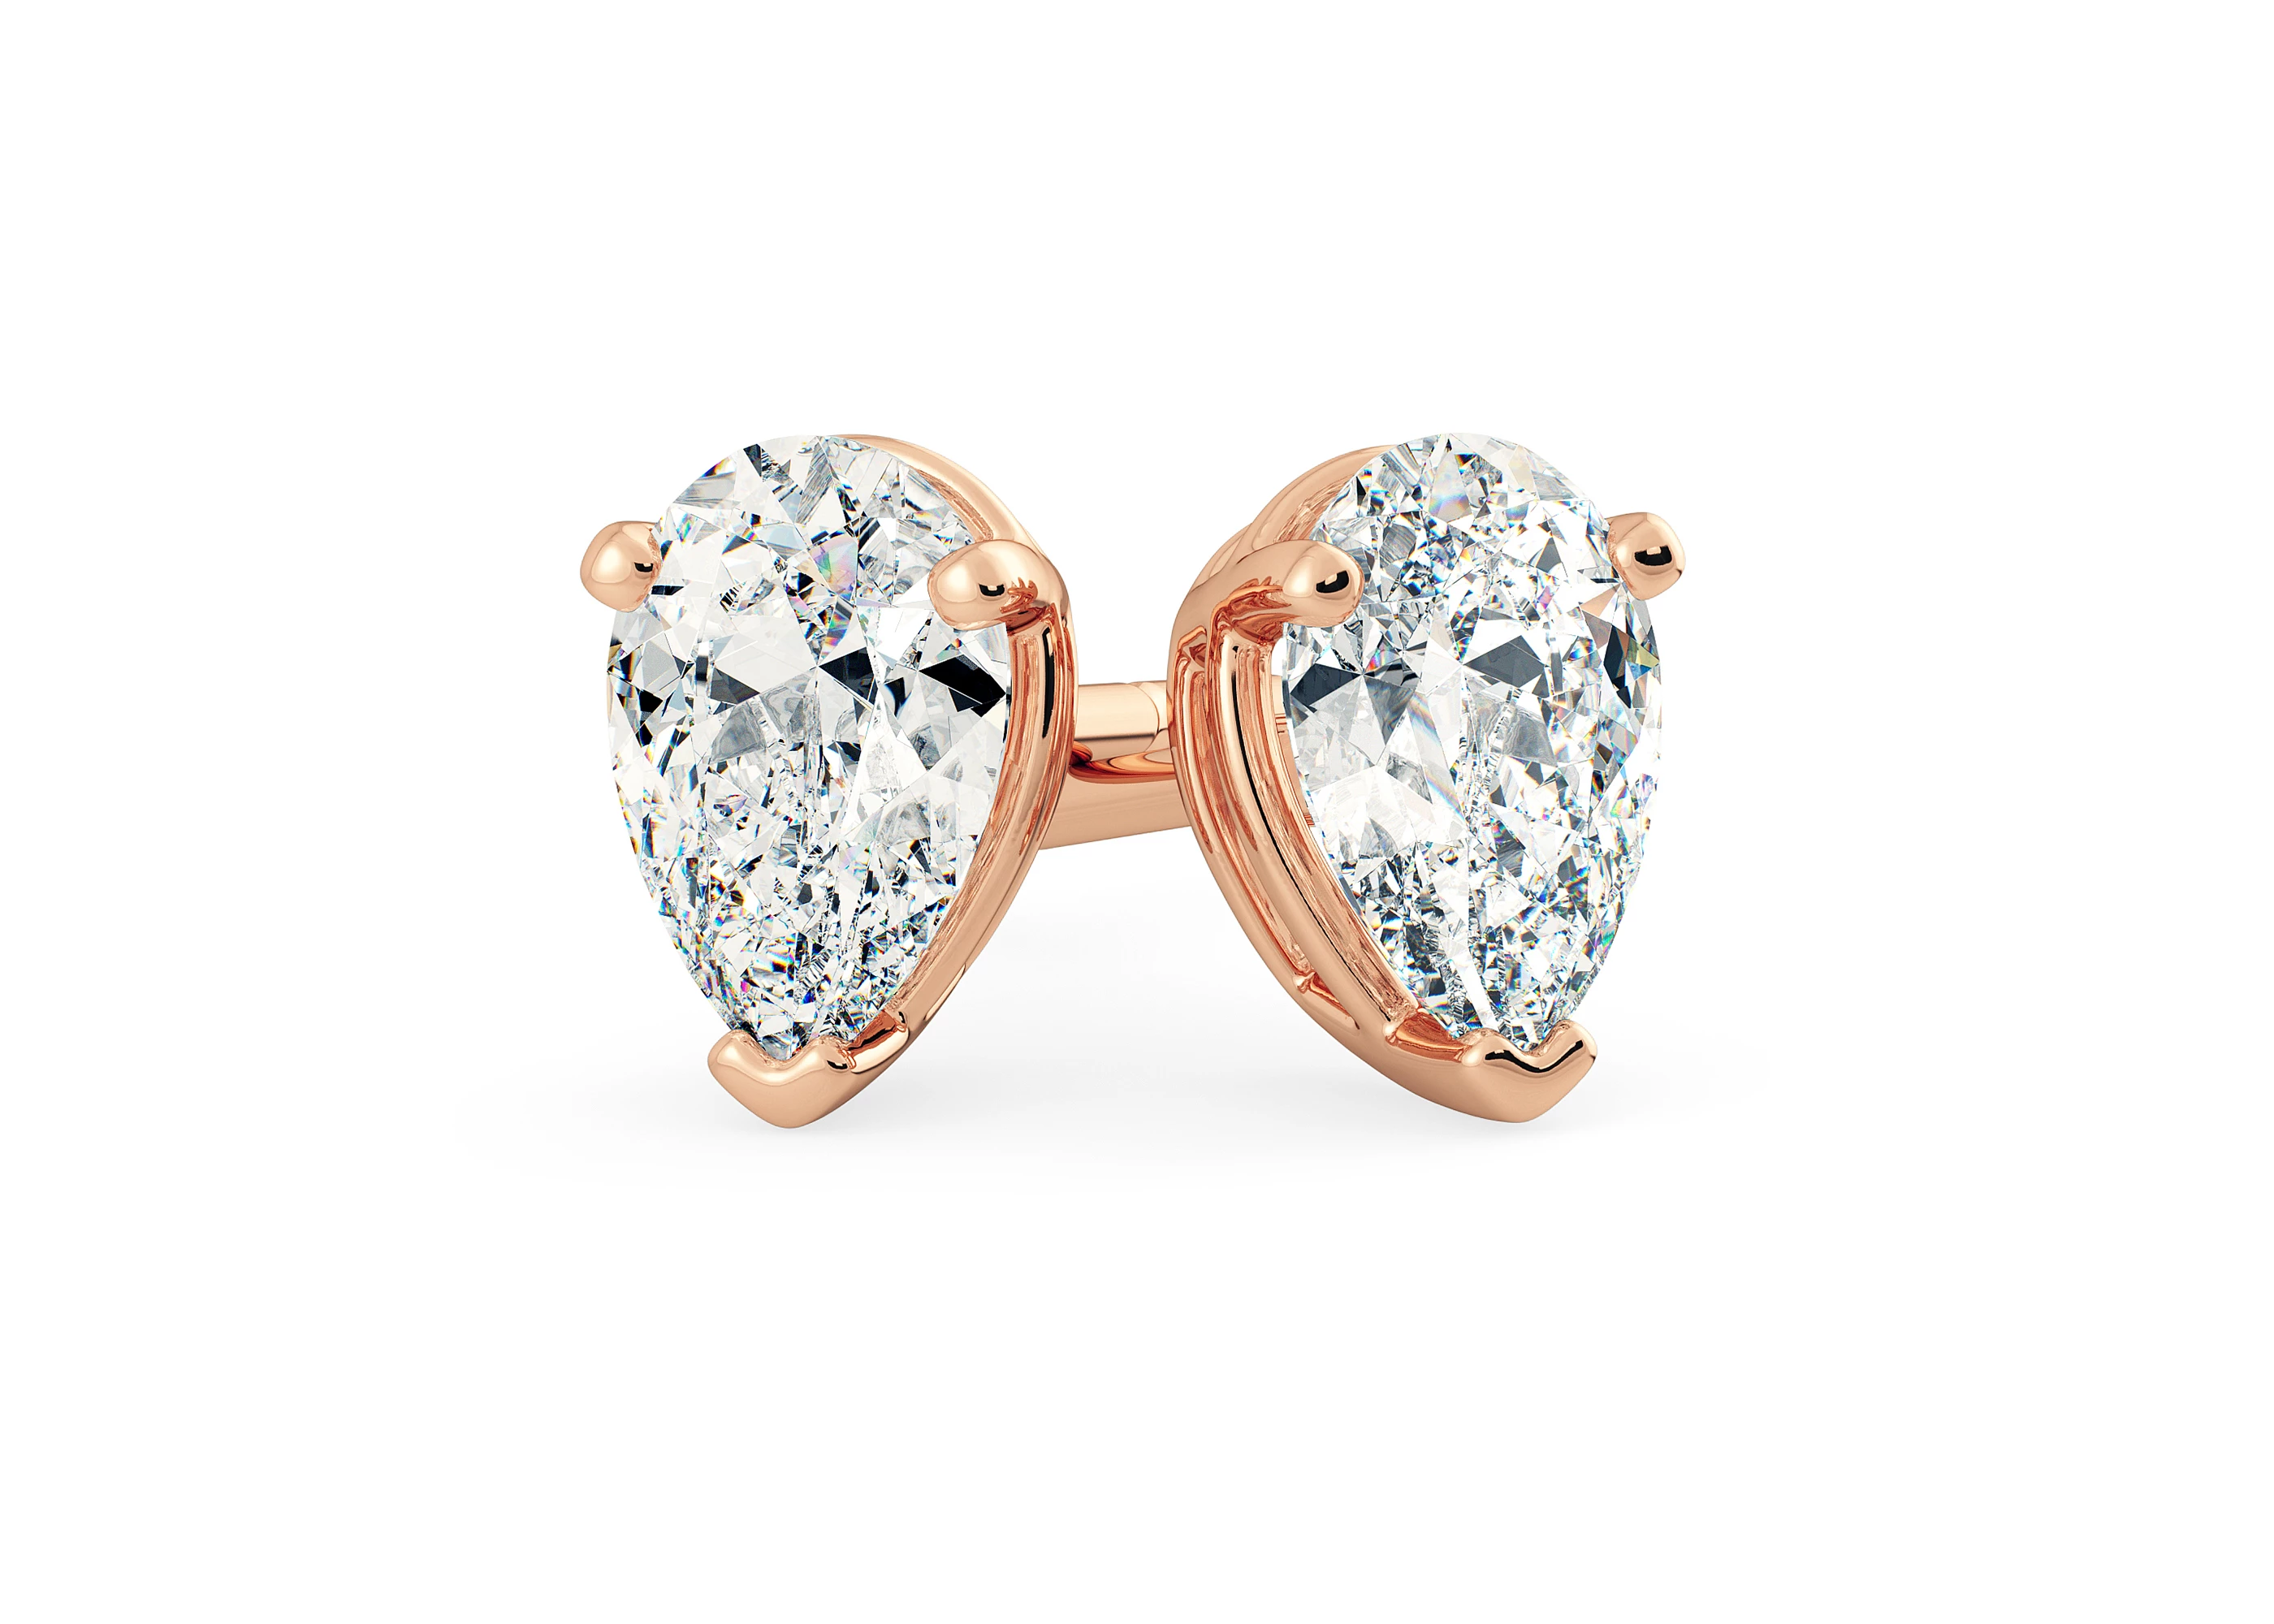 One Carat Pear Diamond Stud Earrings in 18K Rose Gold